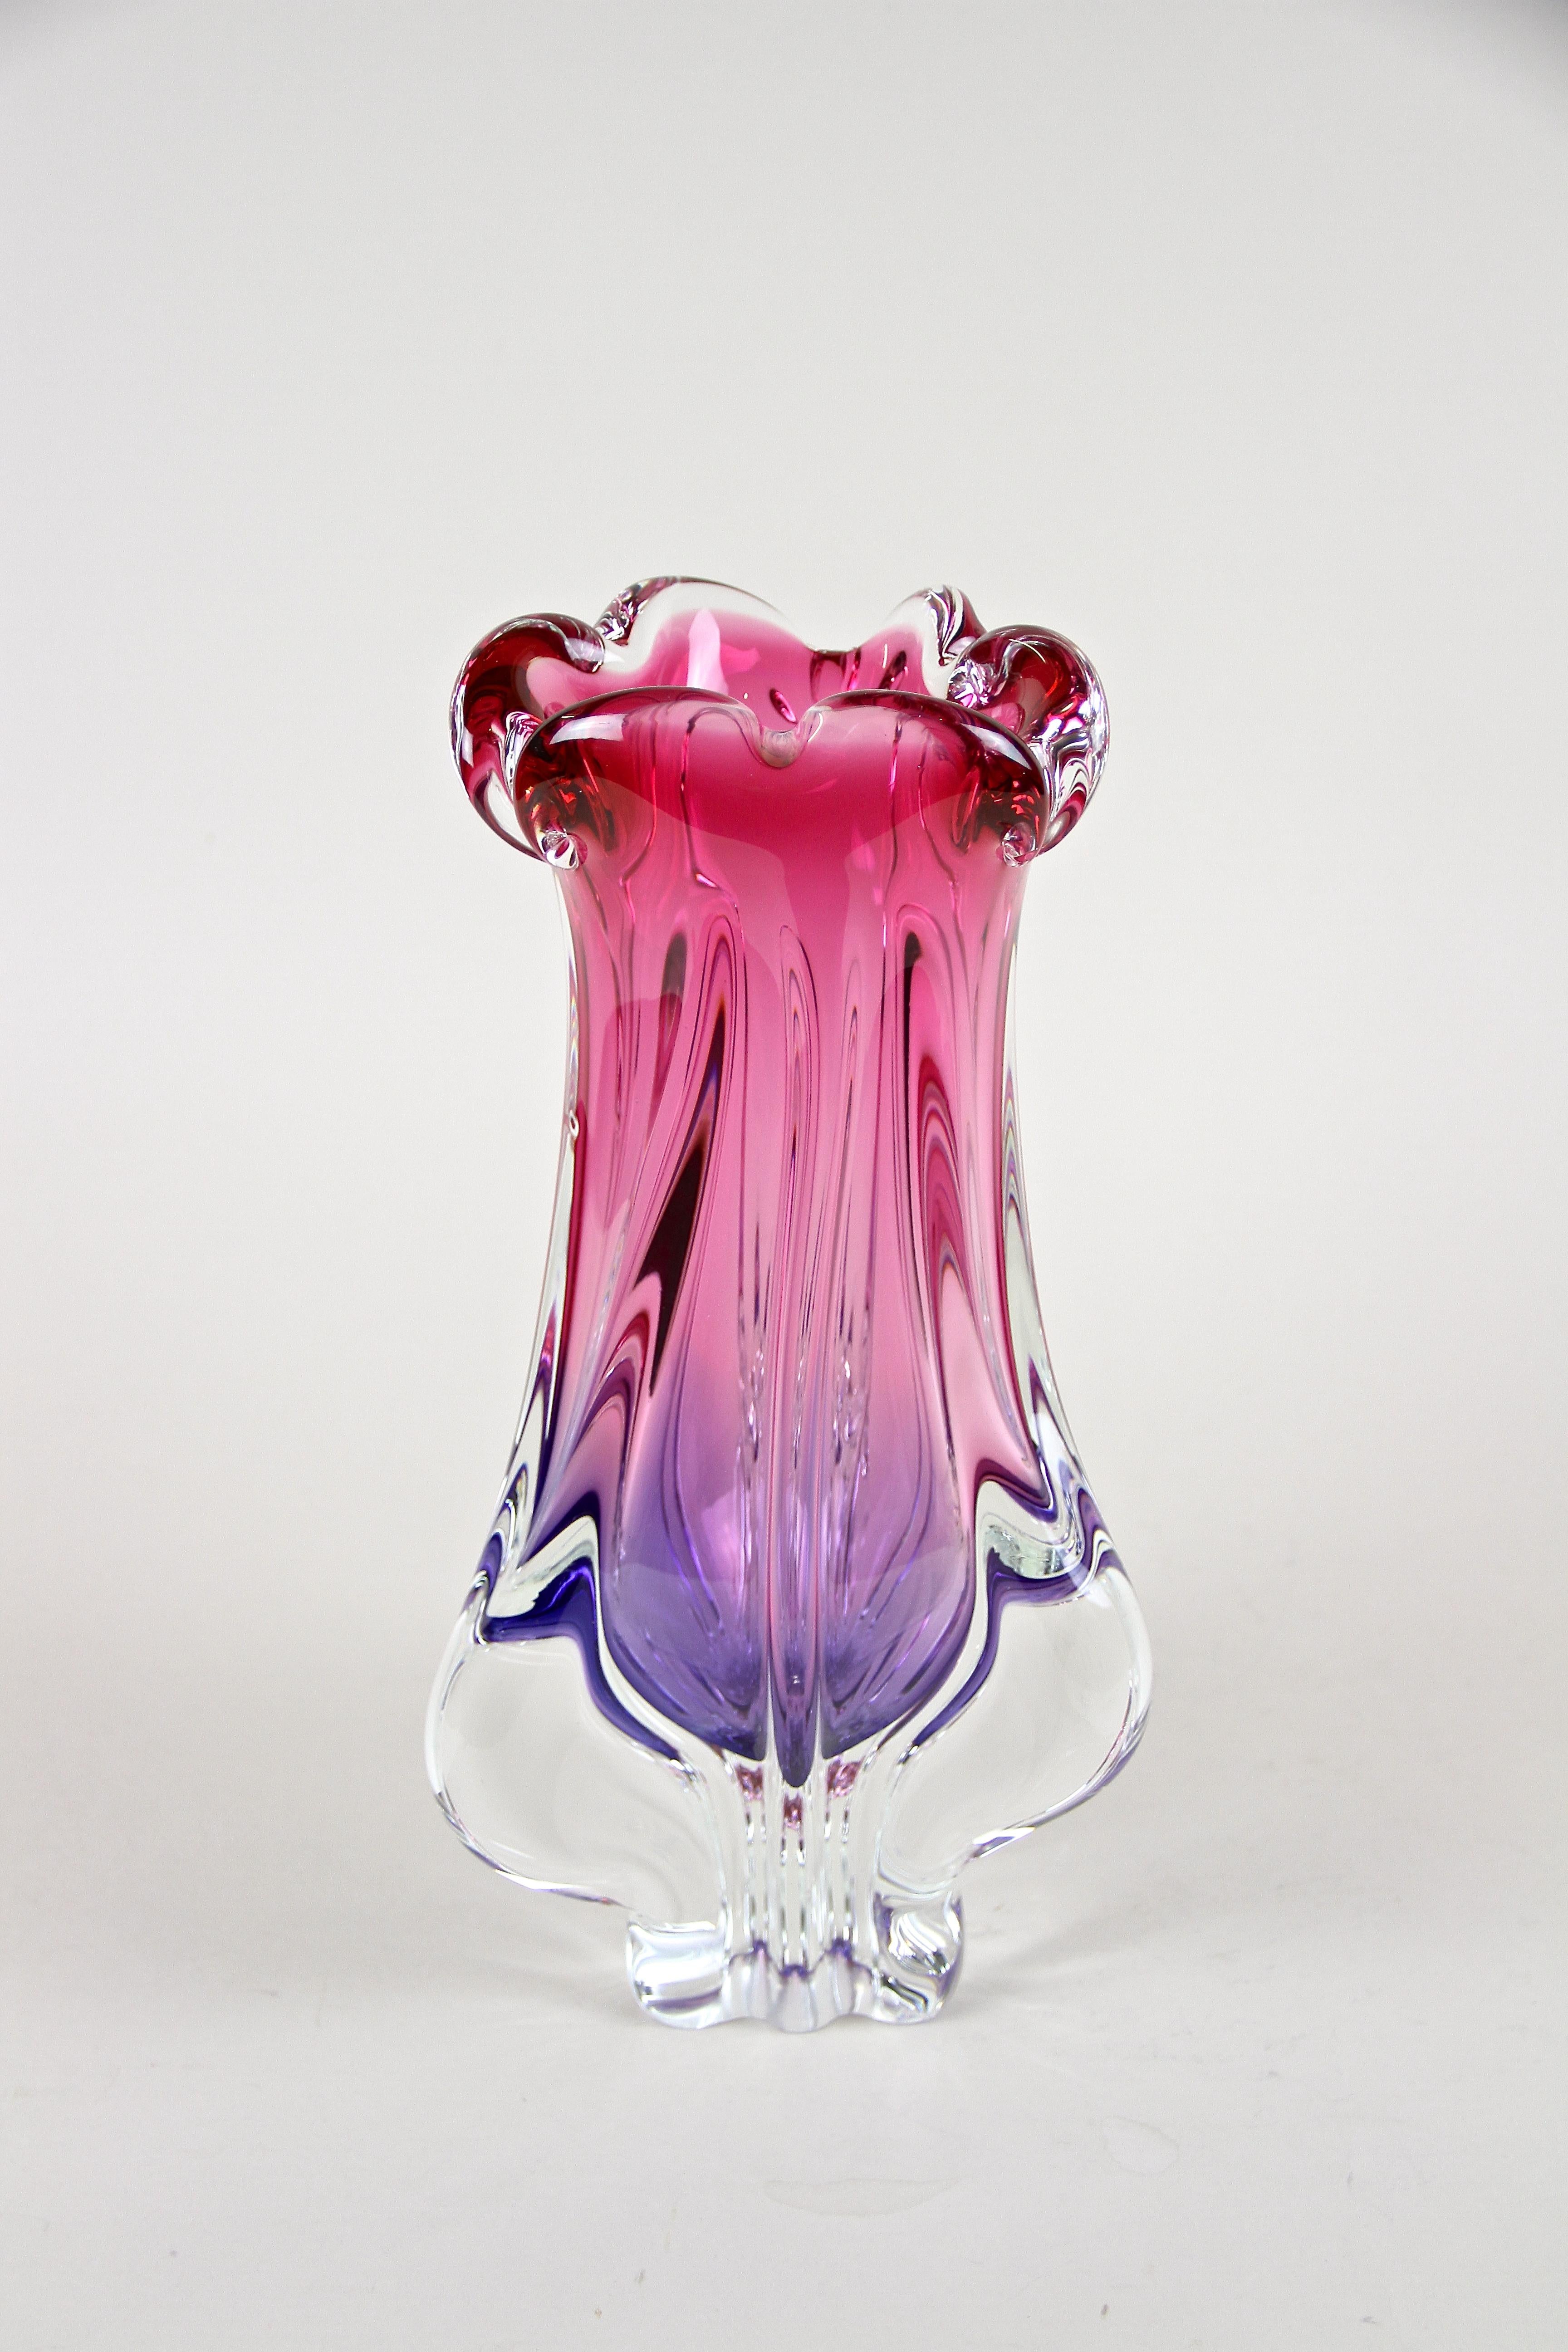 Magnifique vase coloré en verre de Murano du milieu du siècle dernier, provenant des ateliers de Sommerso en Vénétie. Fabriqué à la main dans les années 1960/70 sur l'île de Murano, cet incroyable objet d'art en verre impressionne par sa coloration